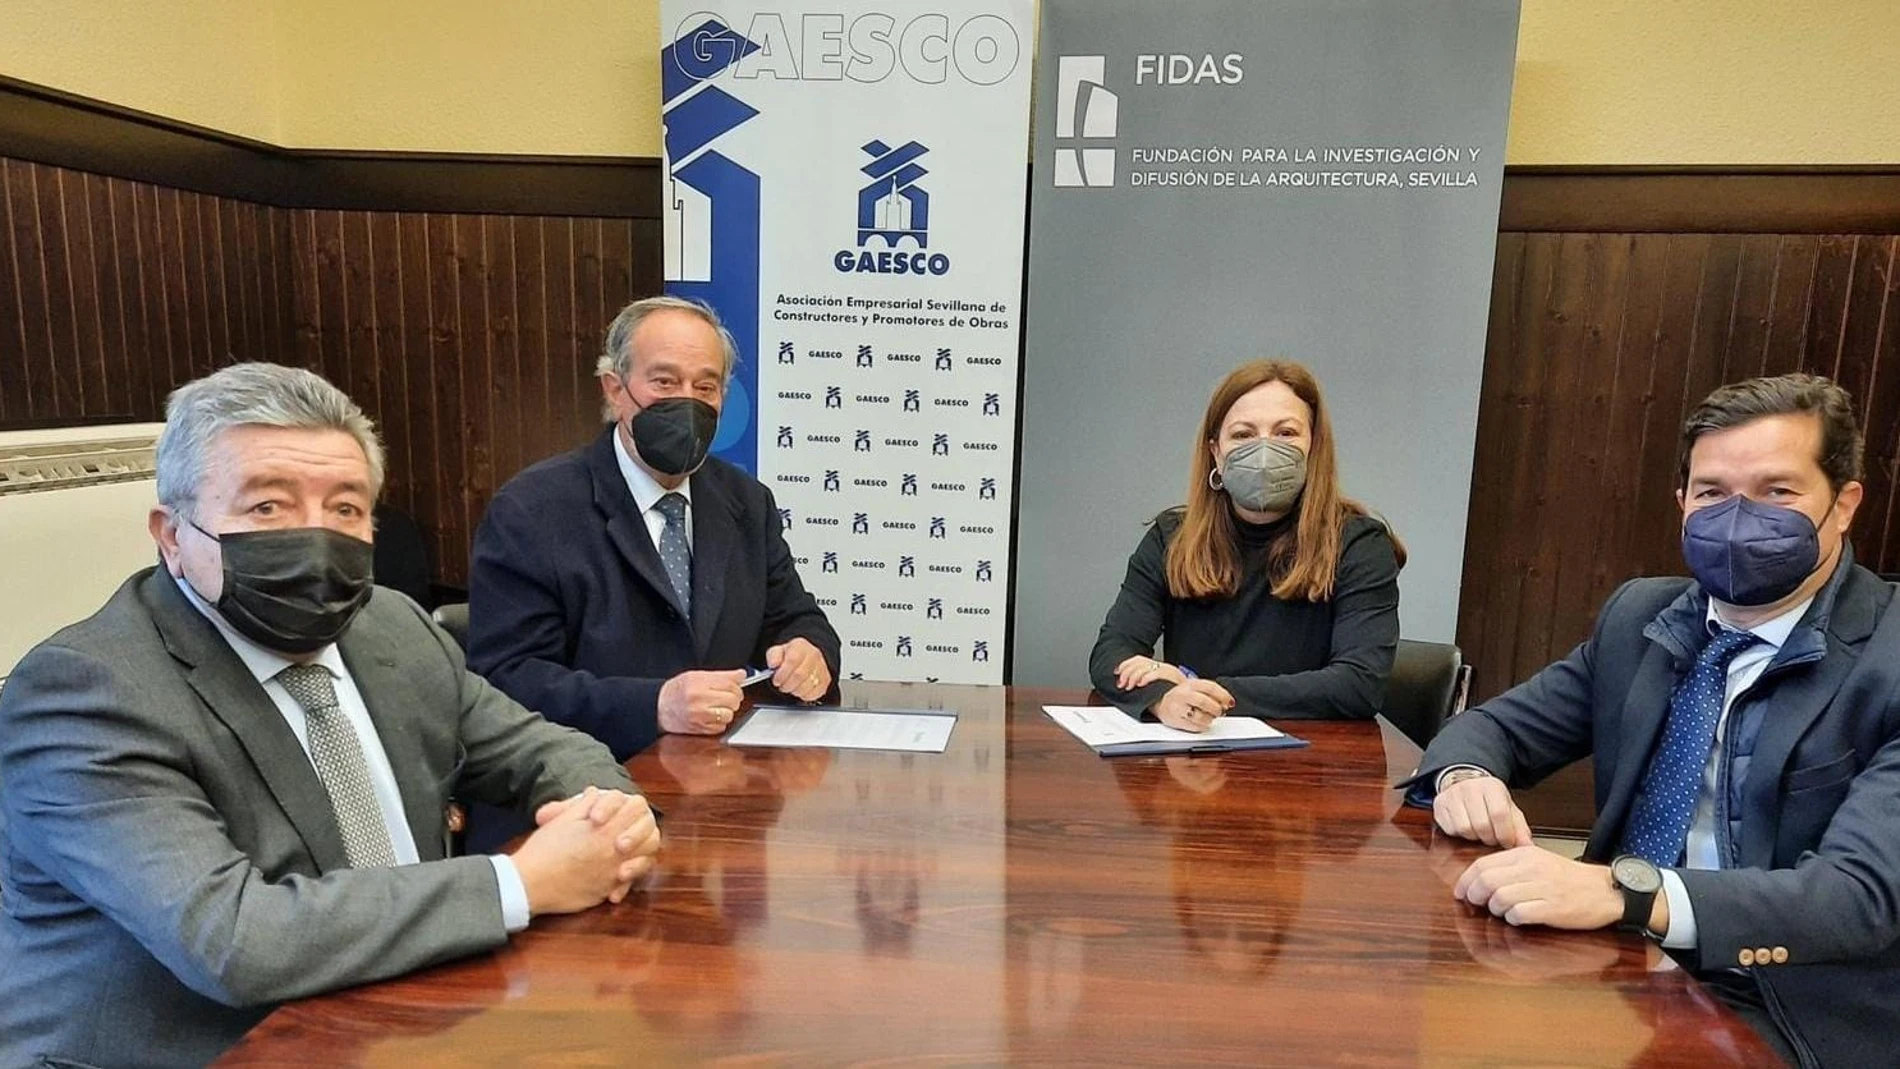 El acuerdo ha sido firmado entre Francisco Martín, Cristina Murillo, Juan Aguilera y Alejandro Durendes